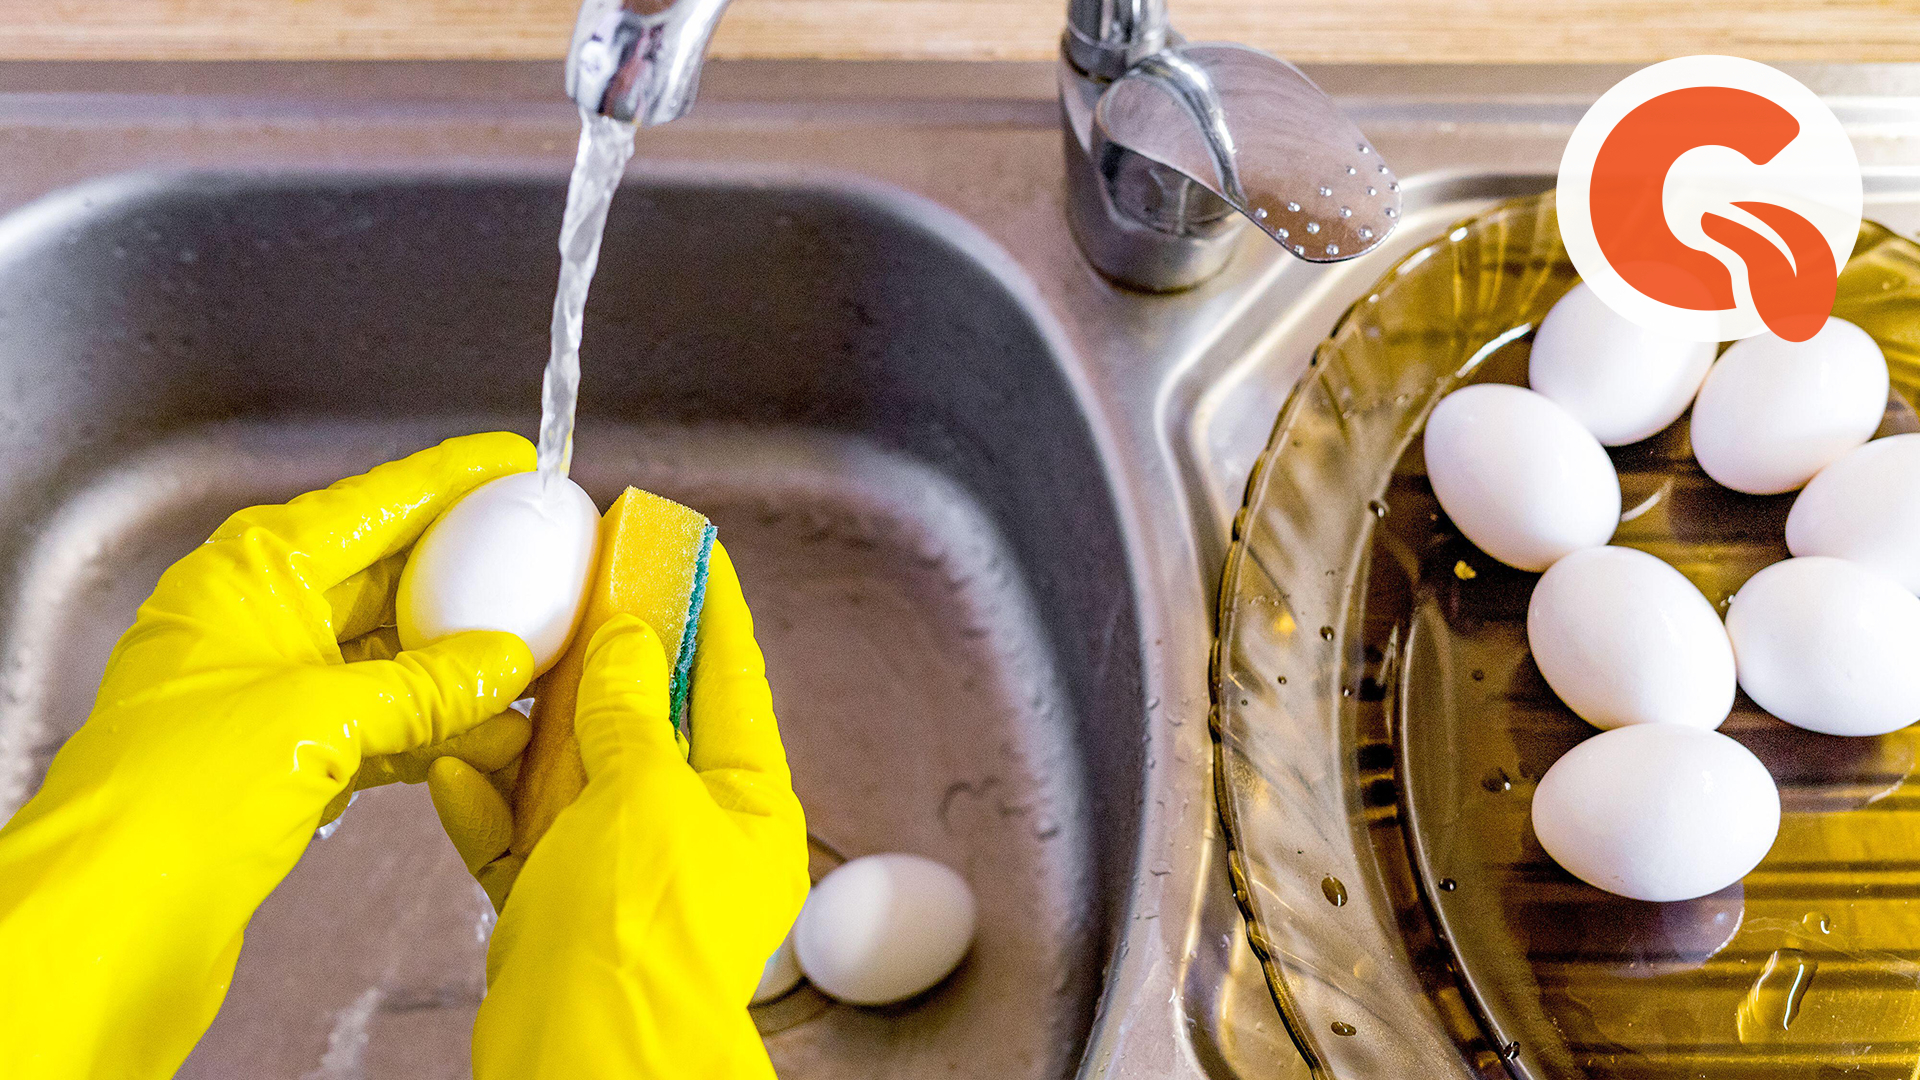 Можно ли мыть домашние яйца перед хранением